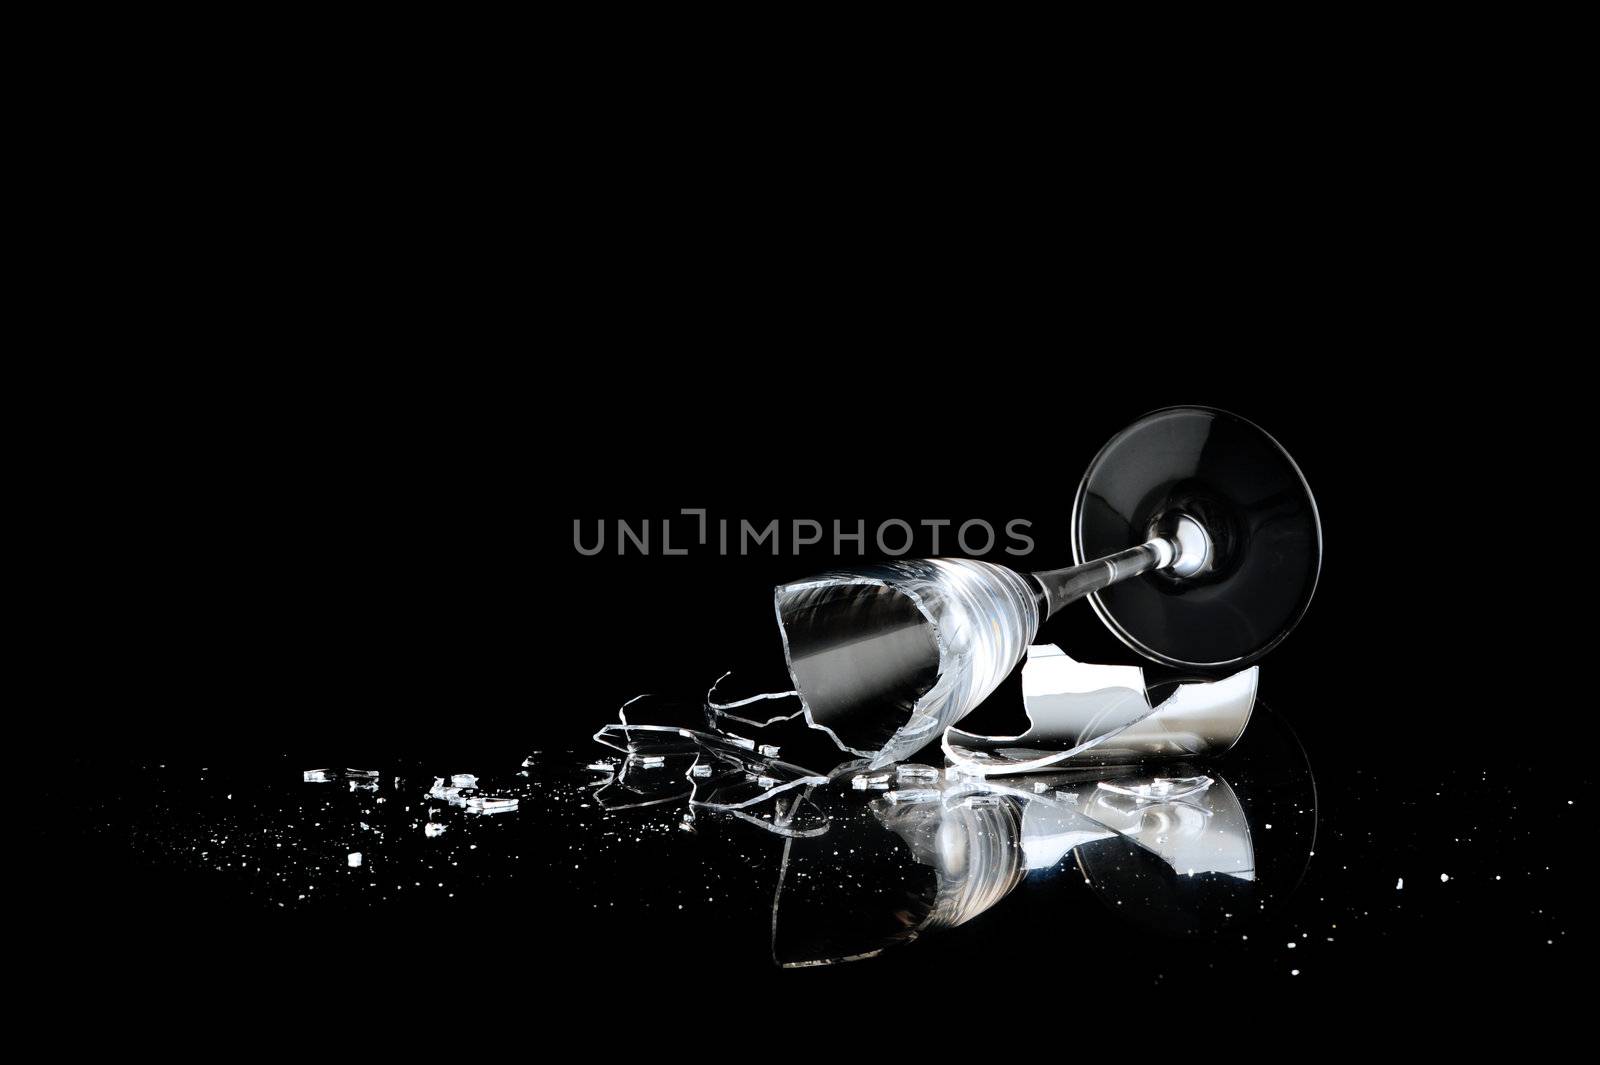 elegant wine glass broken on a dark background